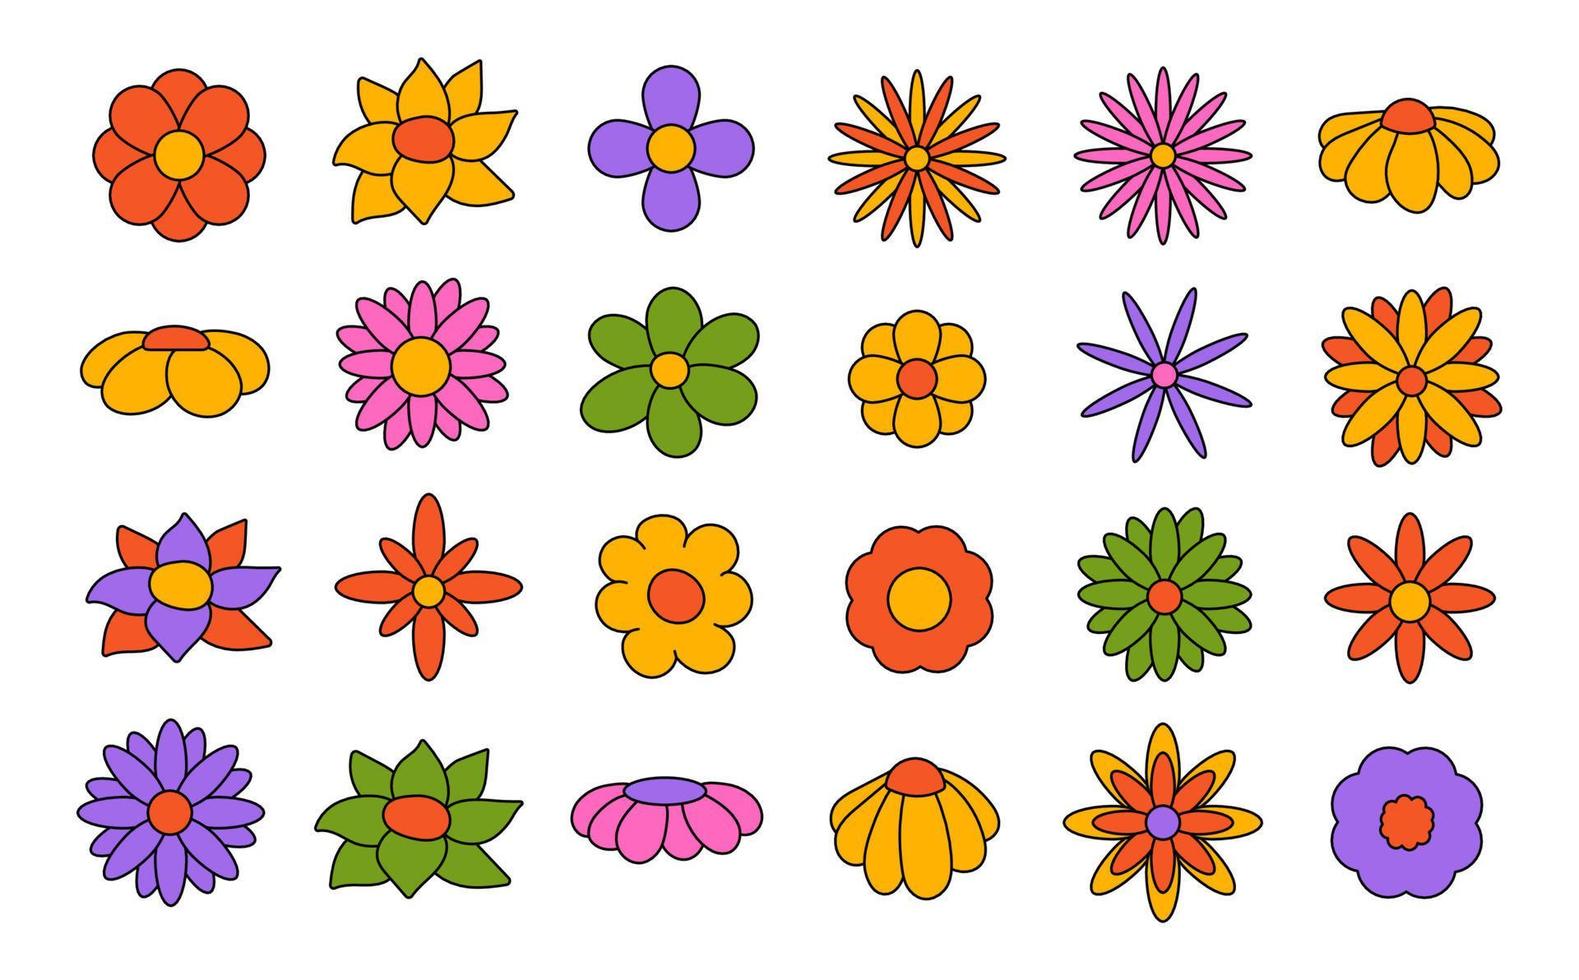 colección de flores florecientes simples al estilo hippie psicodélico de los años 70. conjunto de pegatinas gráficas en diseño retro. fondo maravilloso. ilustración vectorial aislada de trazo editable vector